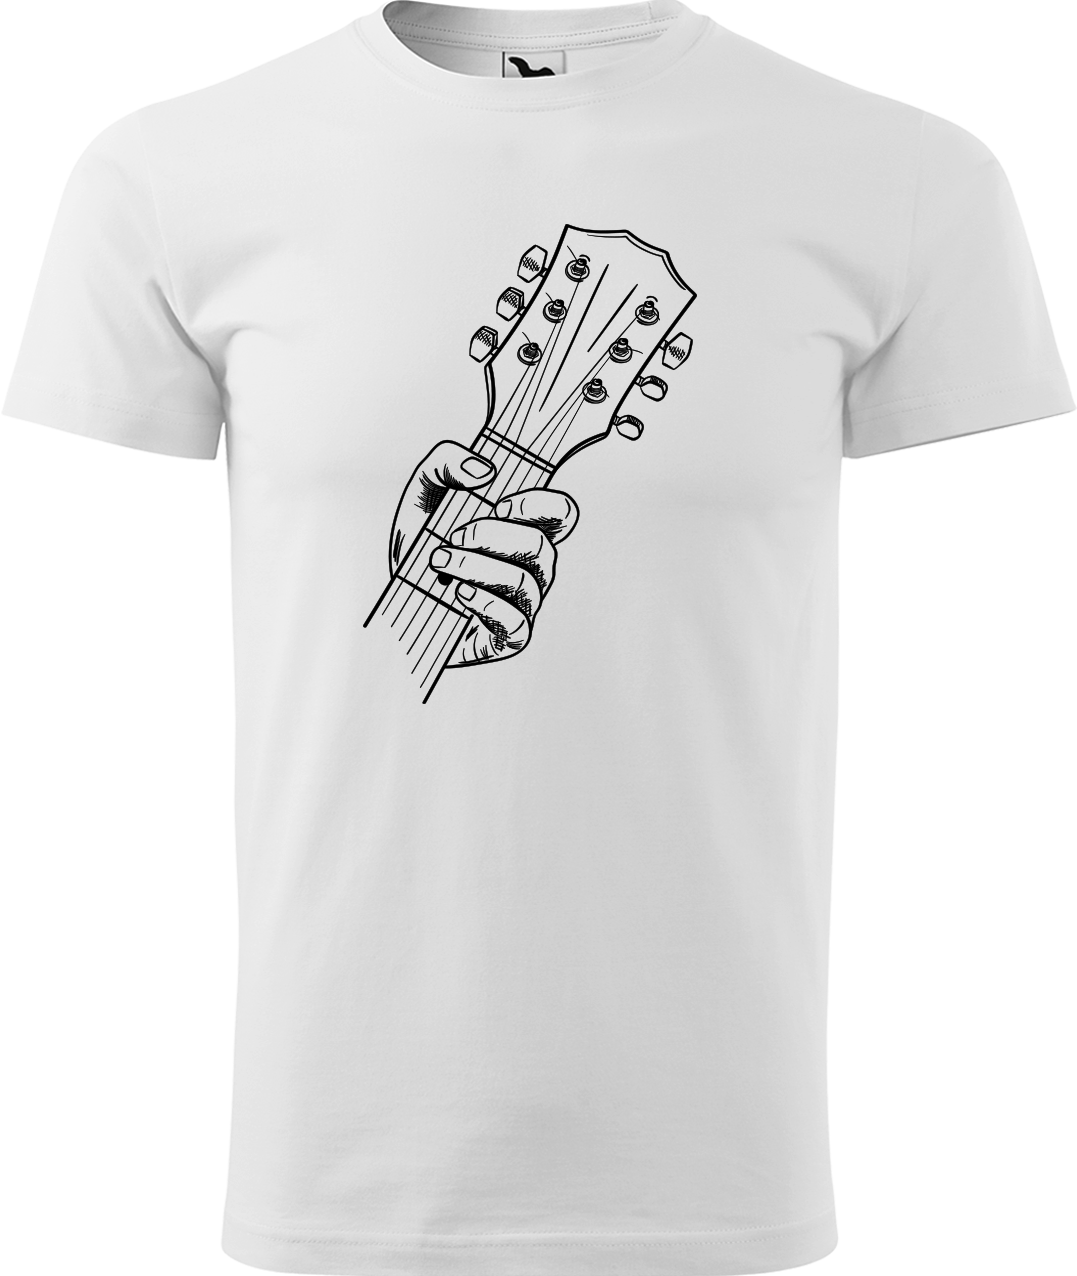 Pánské tričko s kytarou - Hlava kytary Velikost: 4XL, Barva: Bílá (00)